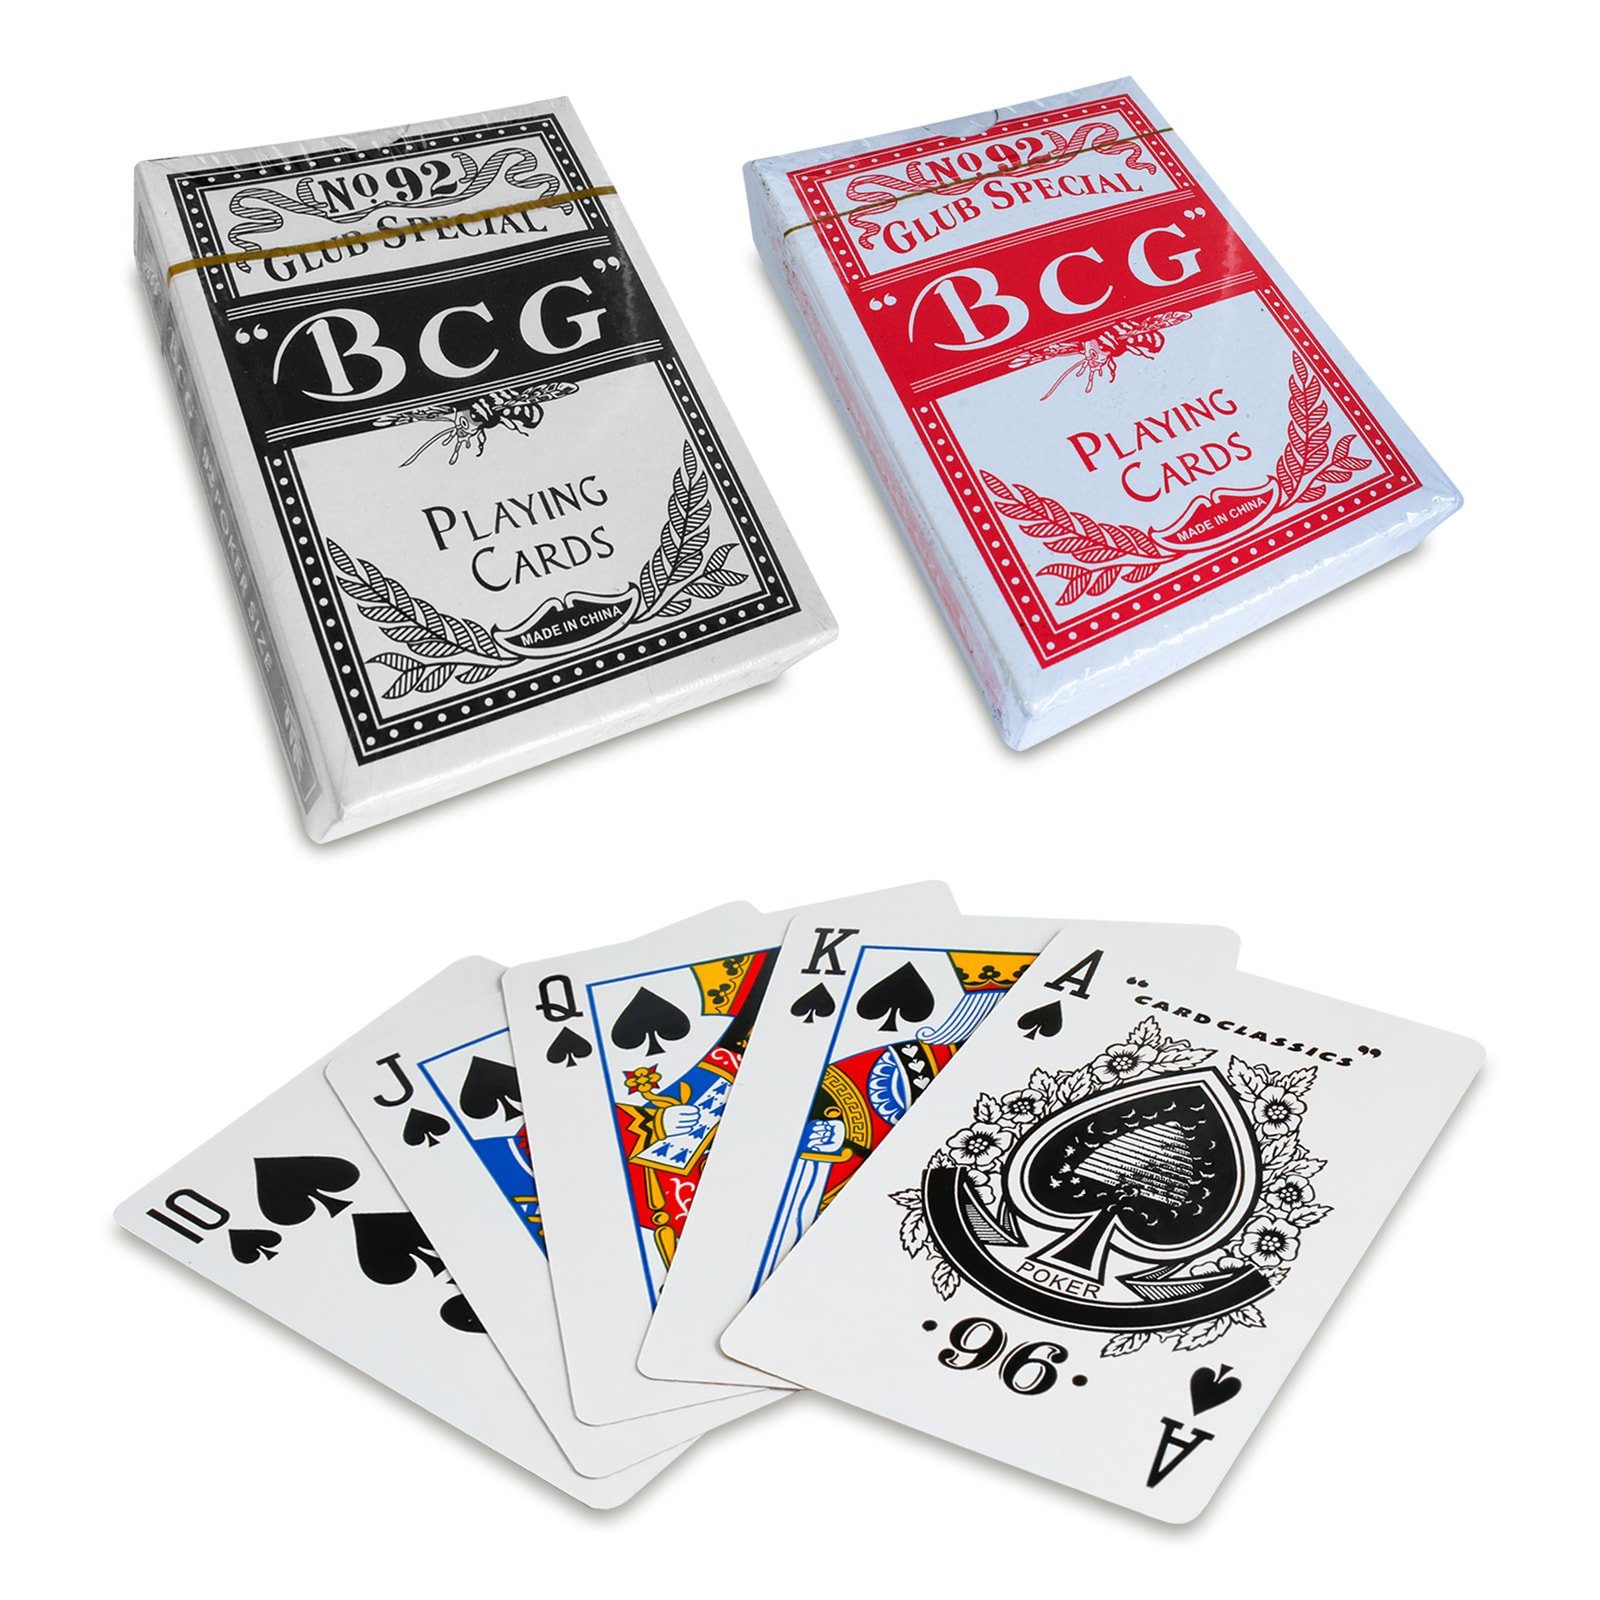 EAXUS Spielesammlung, Pokerkoffer Profi - 500 Deluxe Würfel Poker, Kartendecks Kartenspiel Pokerset & Chips